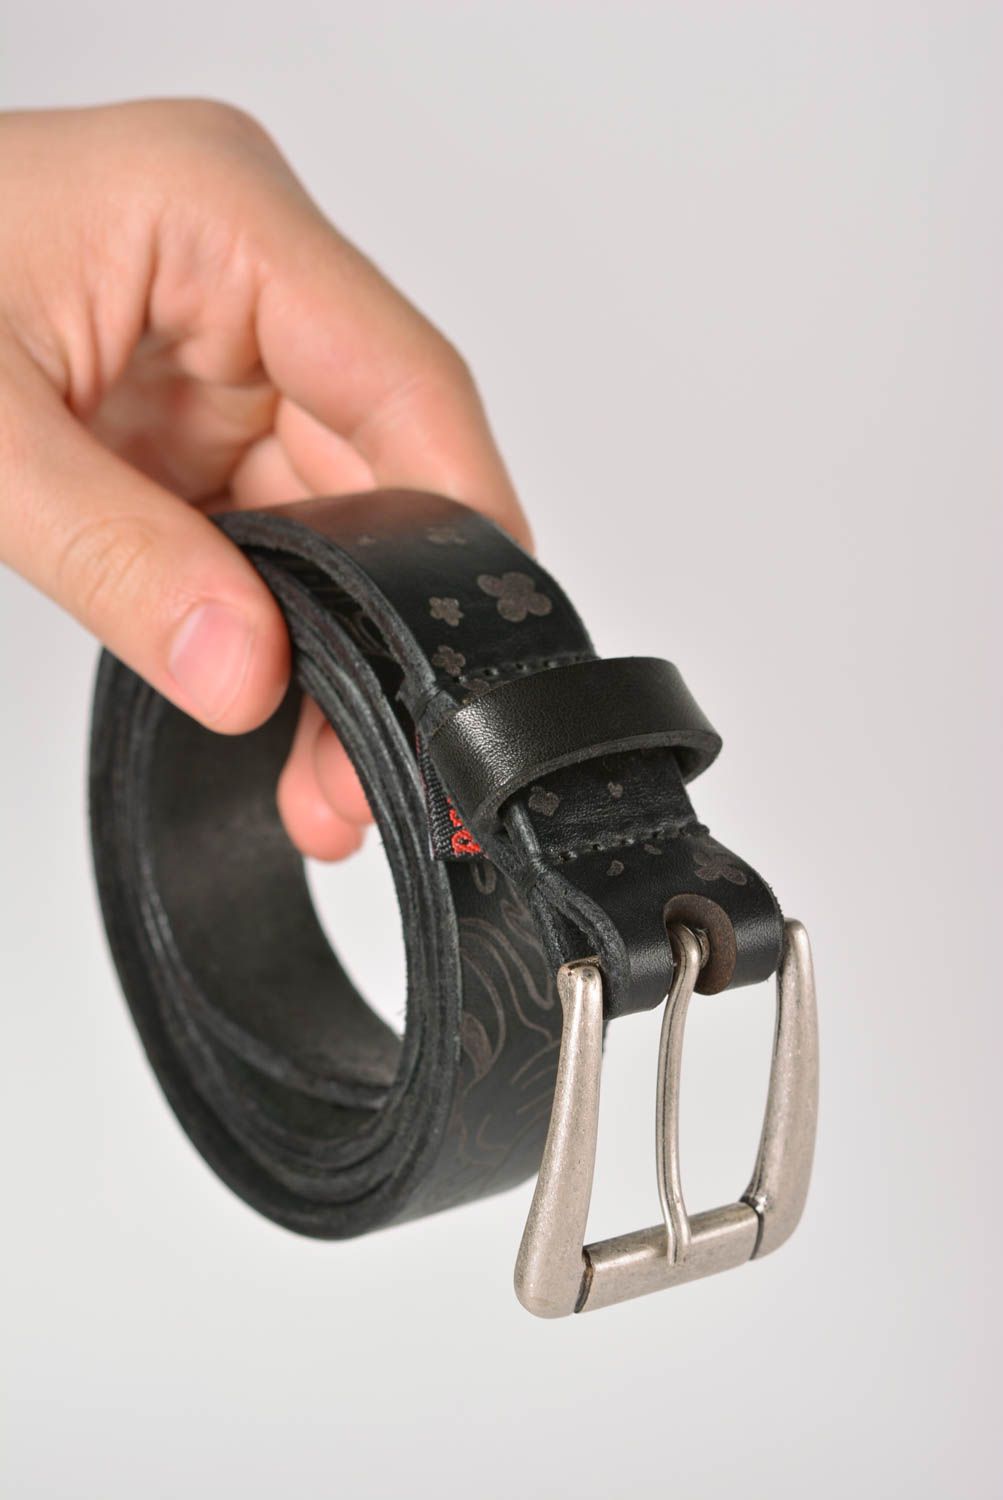 Cinturón de cuero hecho a mano ropa masculina estilosa bonita accesorio de moda foto 3